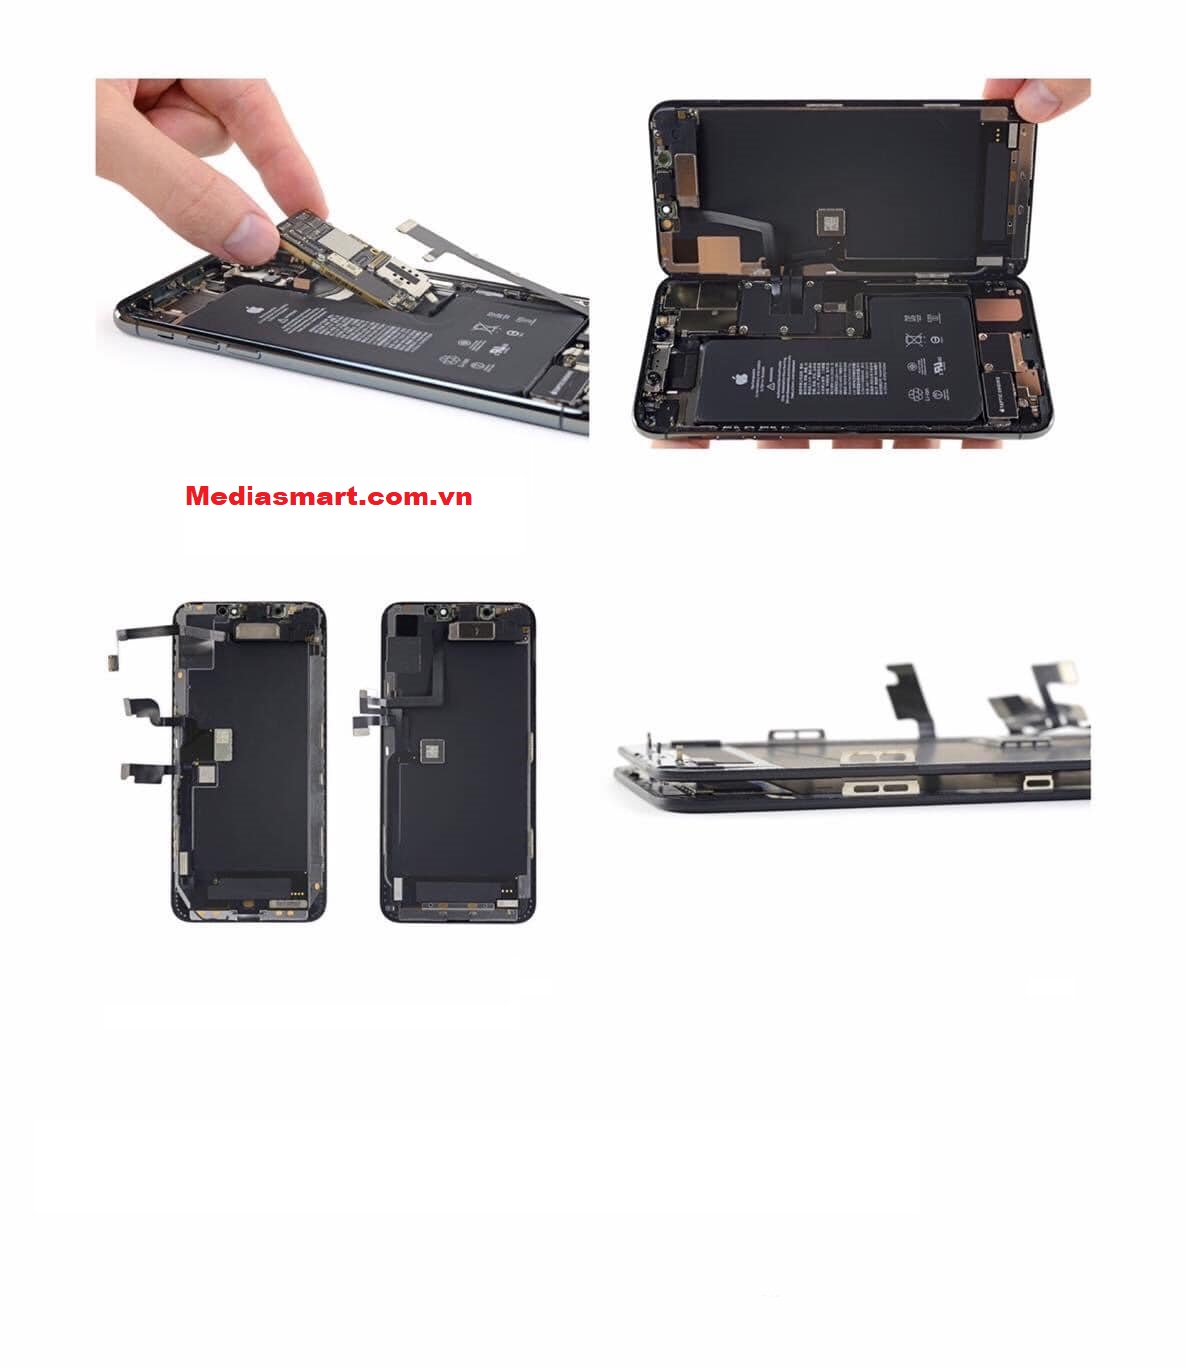 dịch vụ sửa chữa iphone